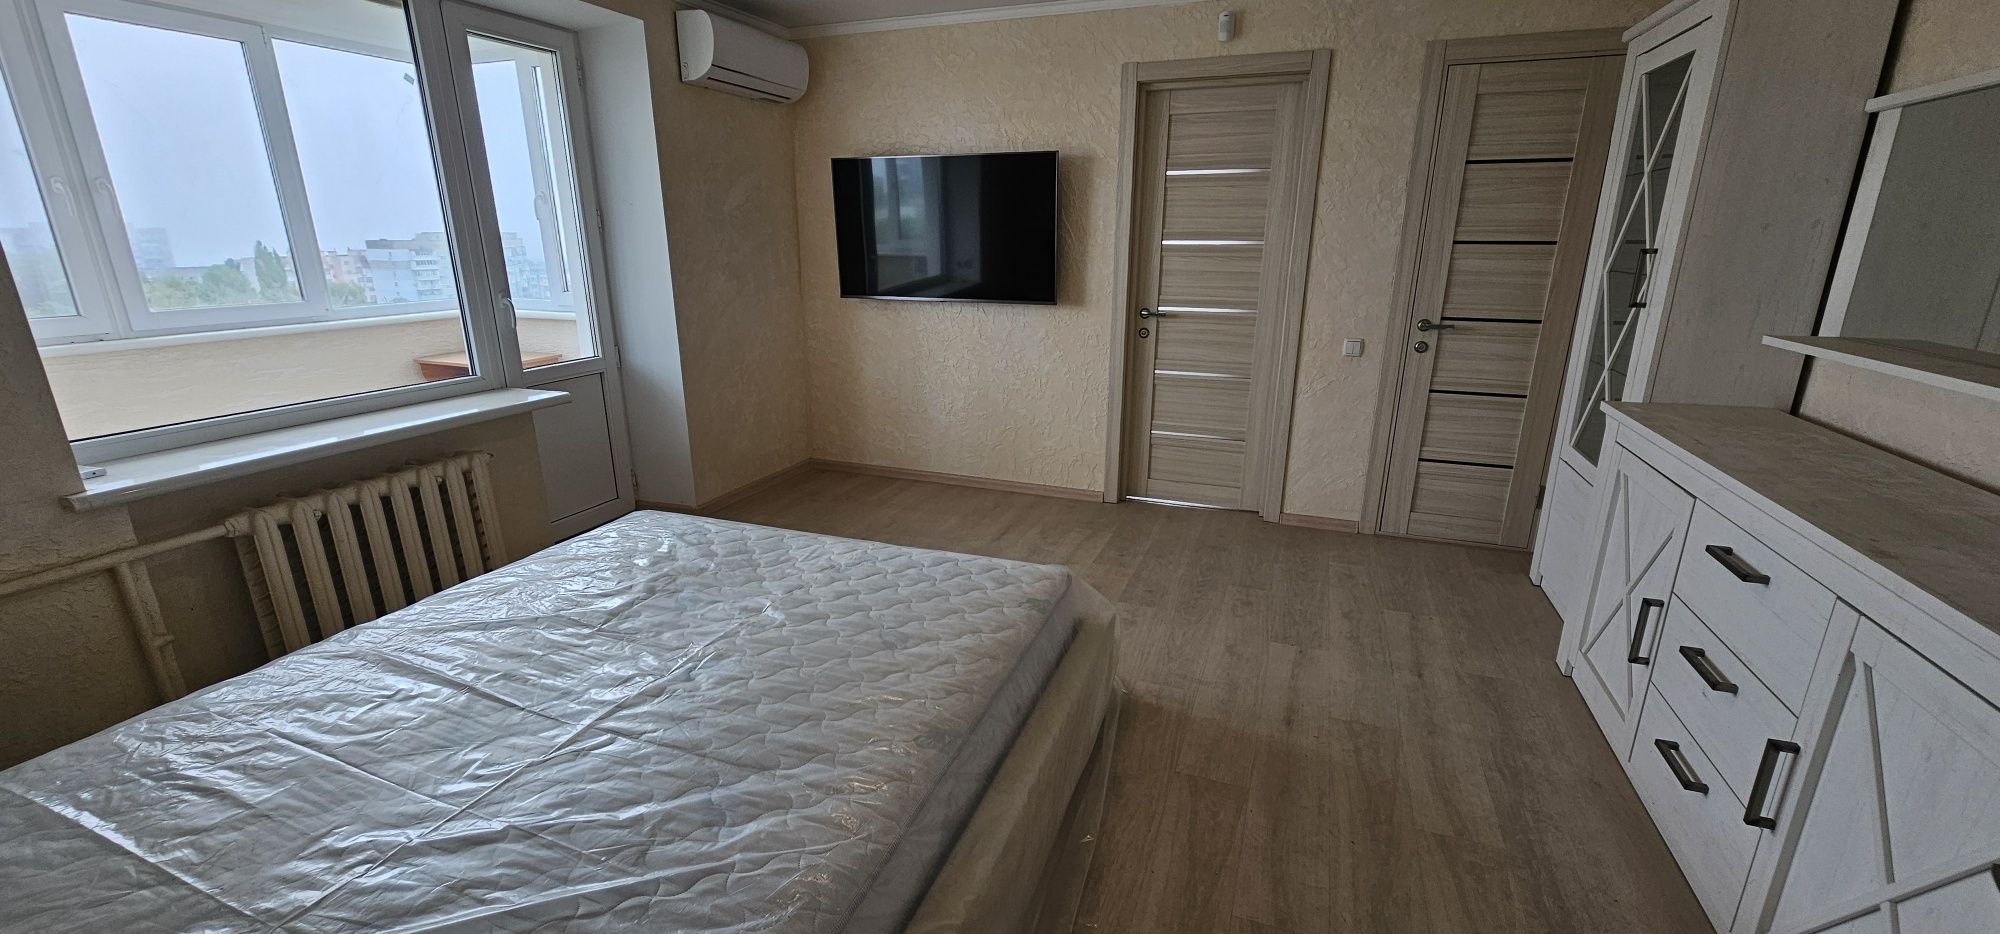 Продам 4х комнатную квартиру в центре города Черноморск